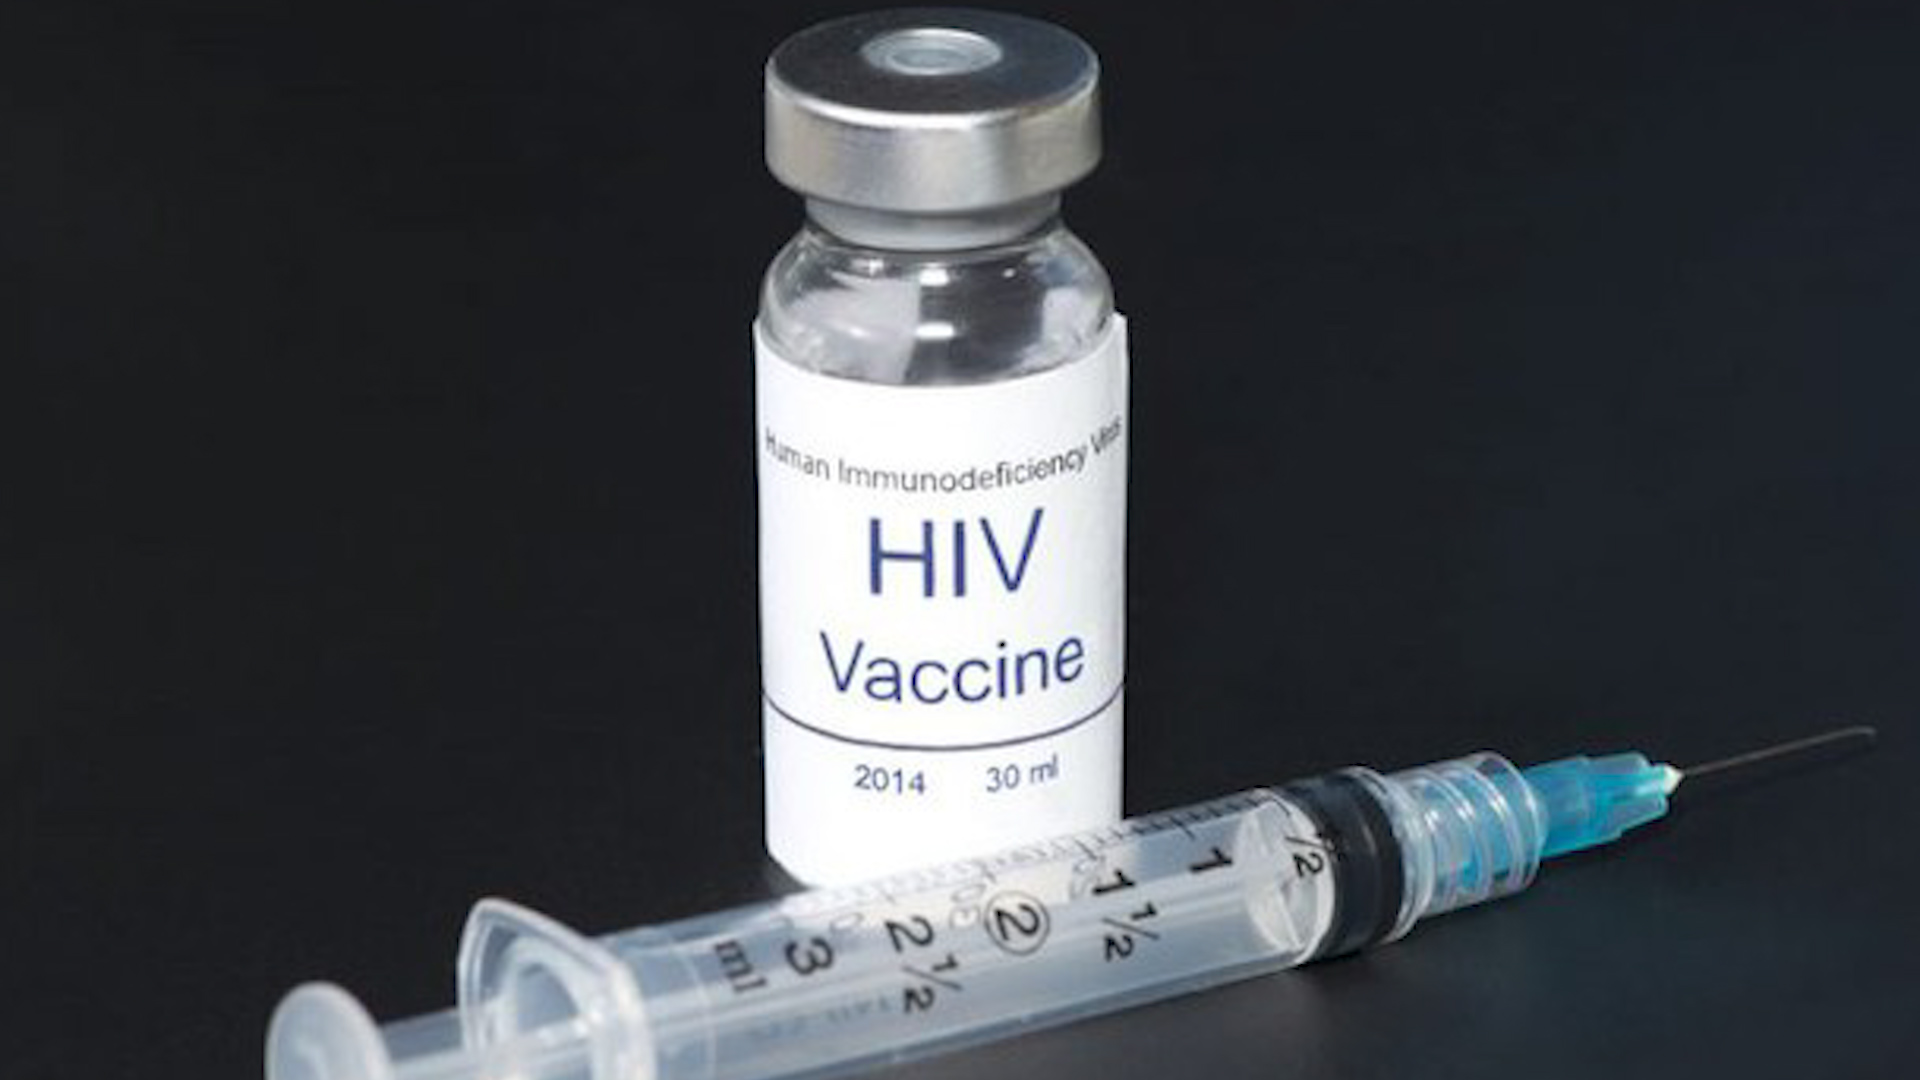  Tuần này, 108 người sẽ tham gia thử nghiệm vắc-xin mRNA chống HIV của Moderna  - Ảnh 2.